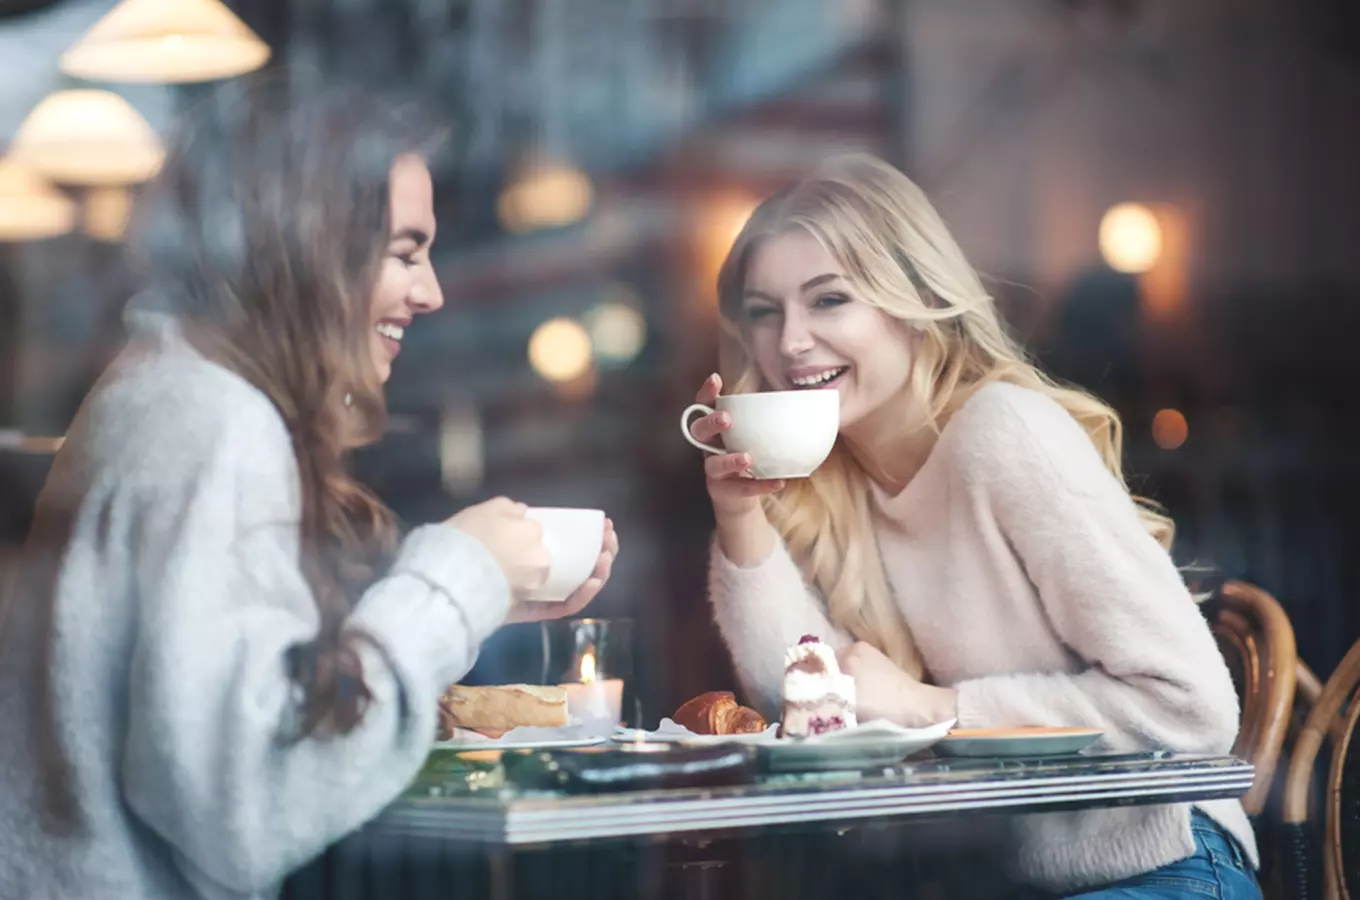 Pražské kavárny a bary podle Lonely Planet: 10 tipů na nejlepší místa dle světoznámého průvodce